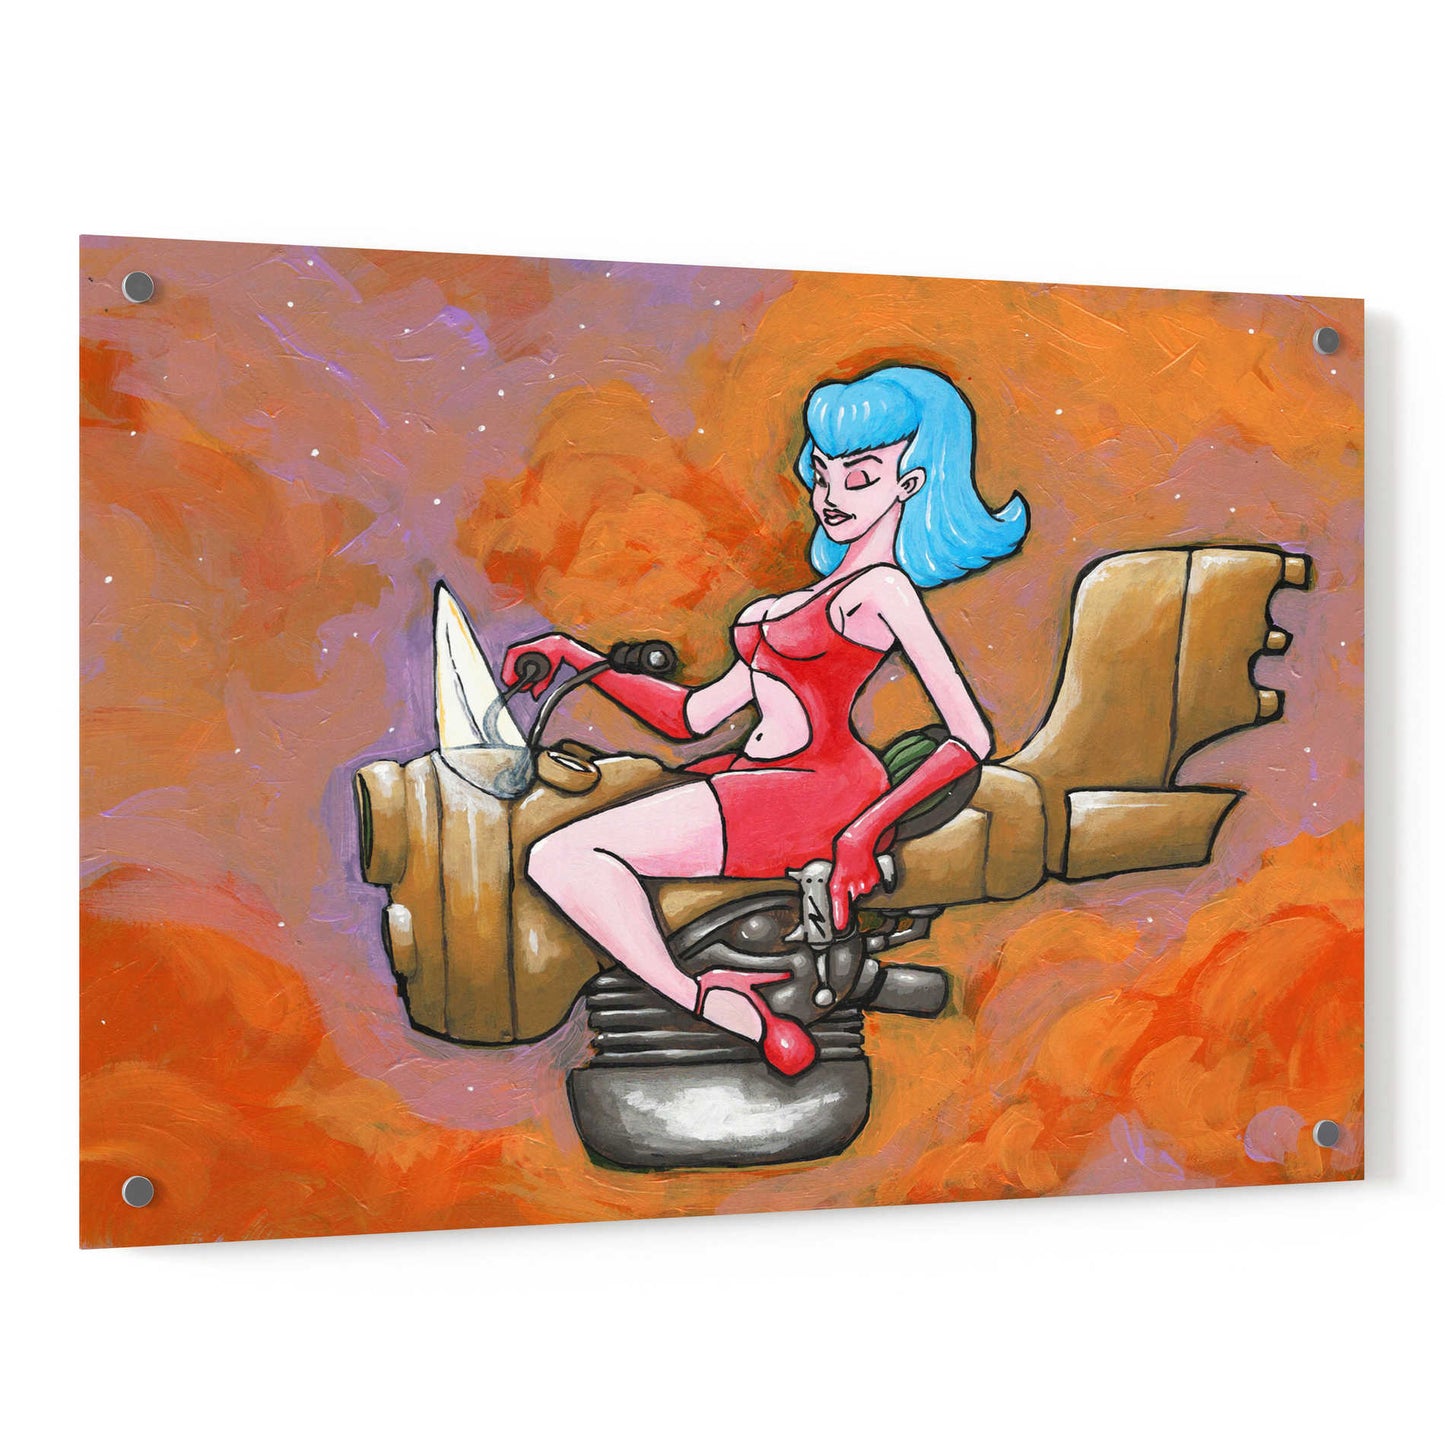 Epic Art 'Rocket Queen Paint' by Craig Snodgrass, Acrylic Glass Wall Art,36x24